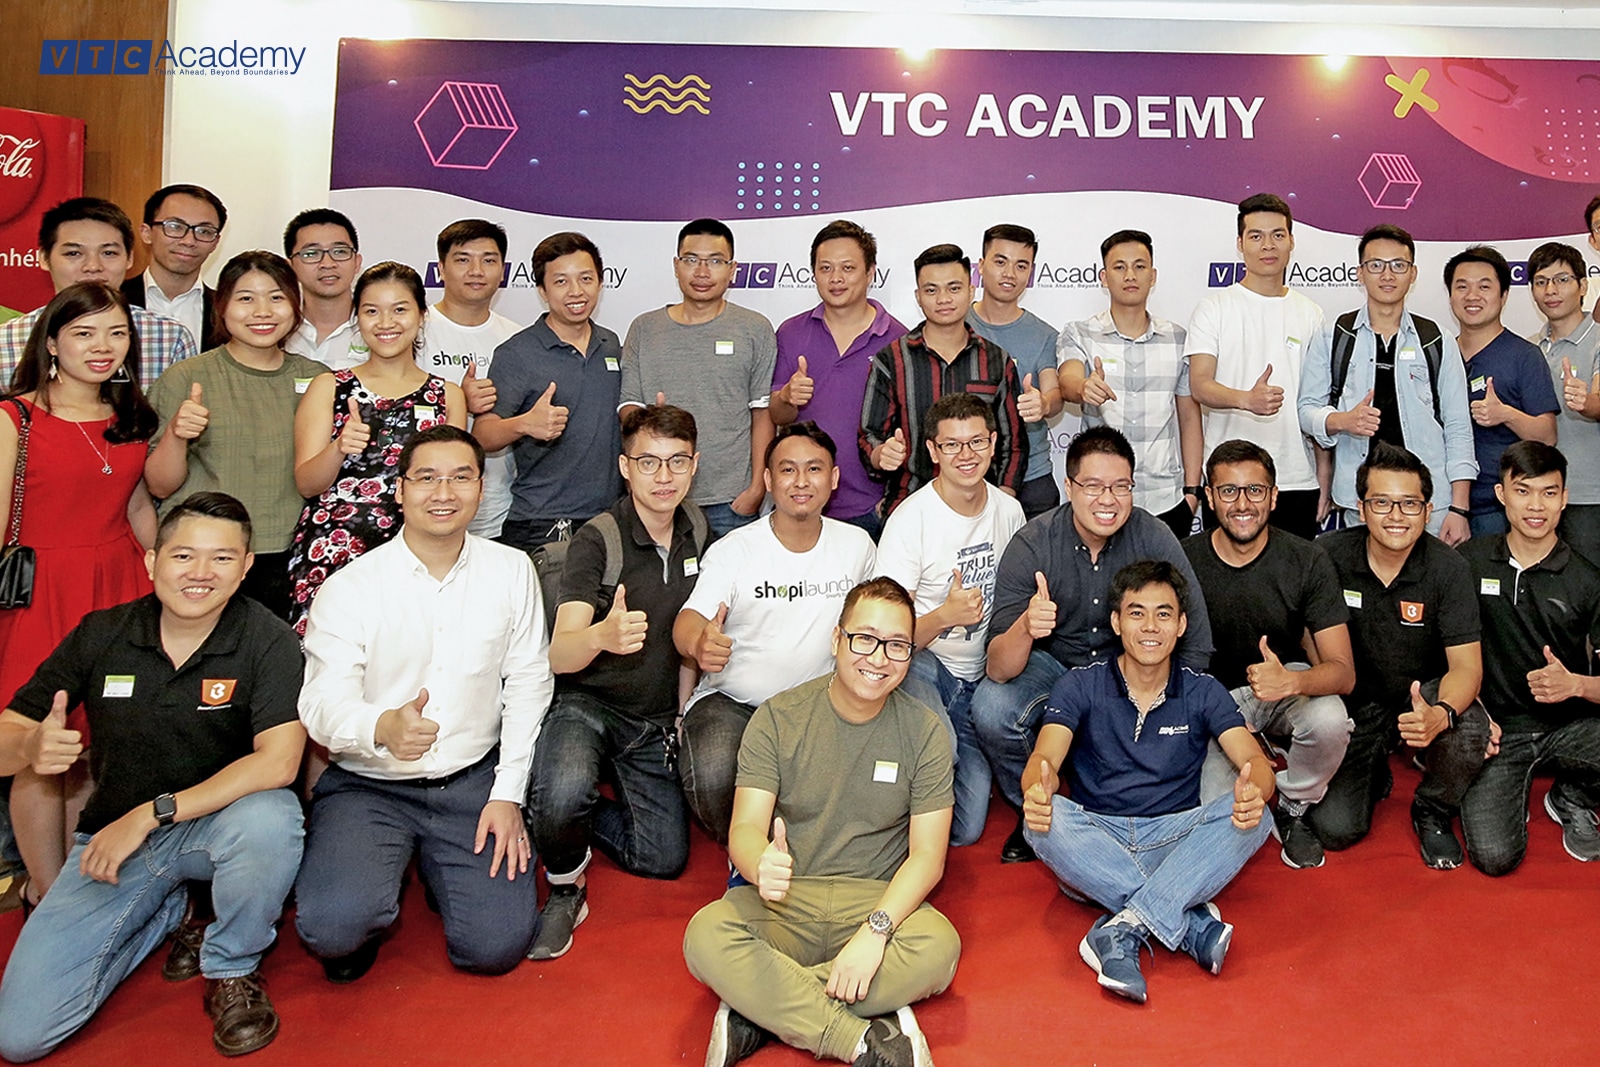 vtca-academy-shopify-04